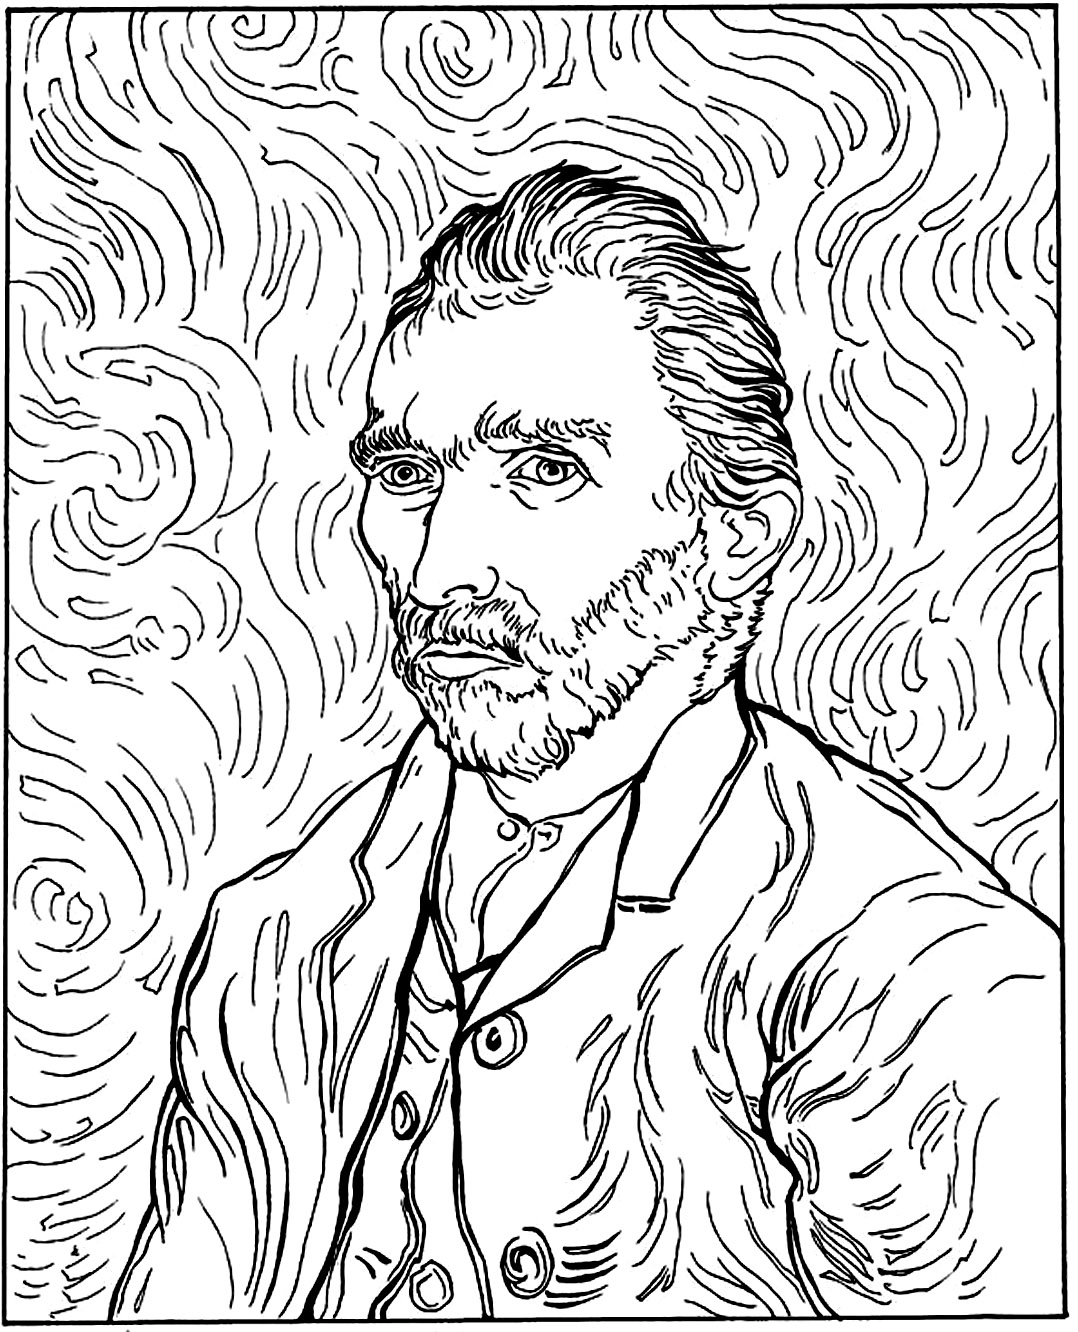 Van Gogh - Autorretrato (1889). Cor de Vincent Van Gogh num dos seus famosos auto-retratos, pintado em 1889.Sabia que? Van Gogh vendeu apenas um quadro durante a sua vida e só se tornou famoso após a sua morte.